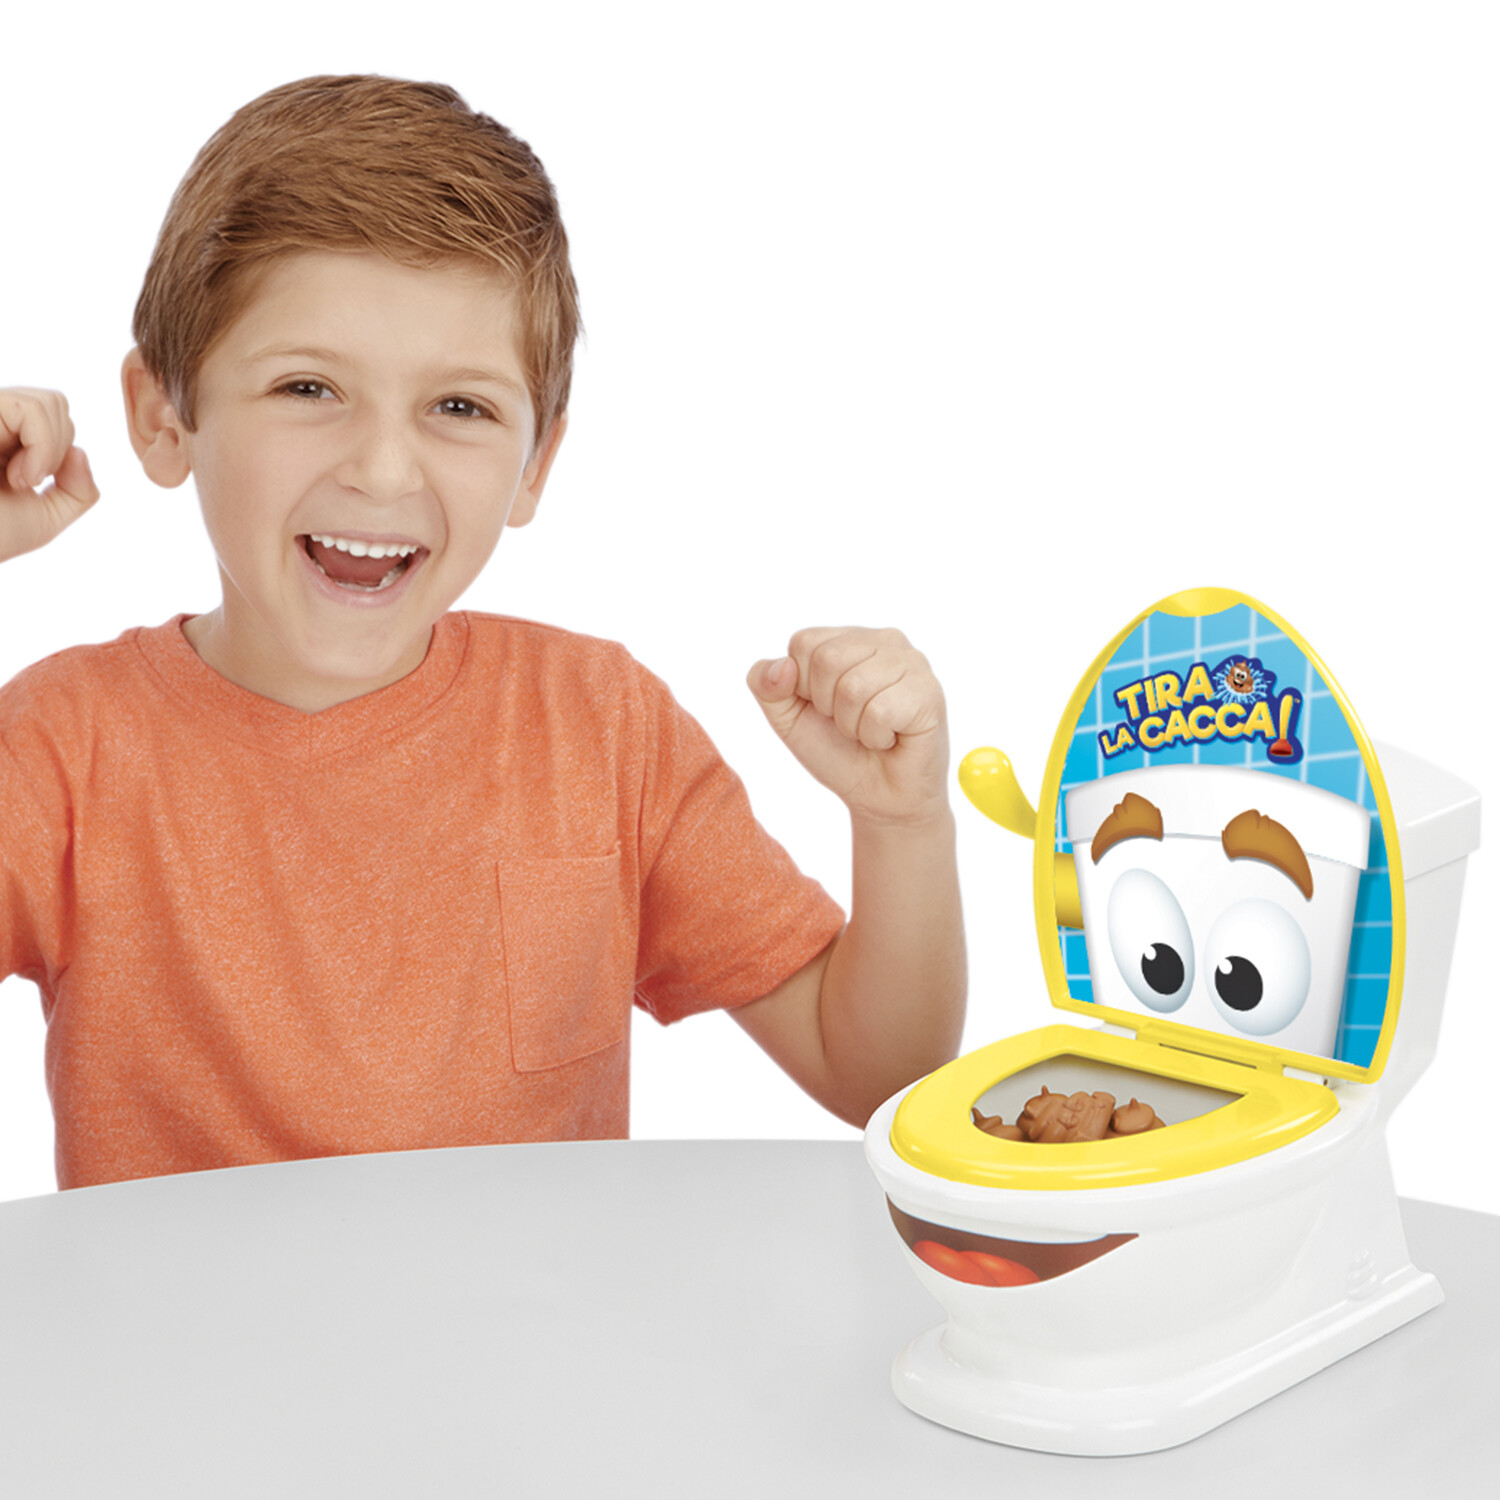 Rocco giocattoli - tira la cacca - gioco da tavolo per bambini dai 4 anni - 